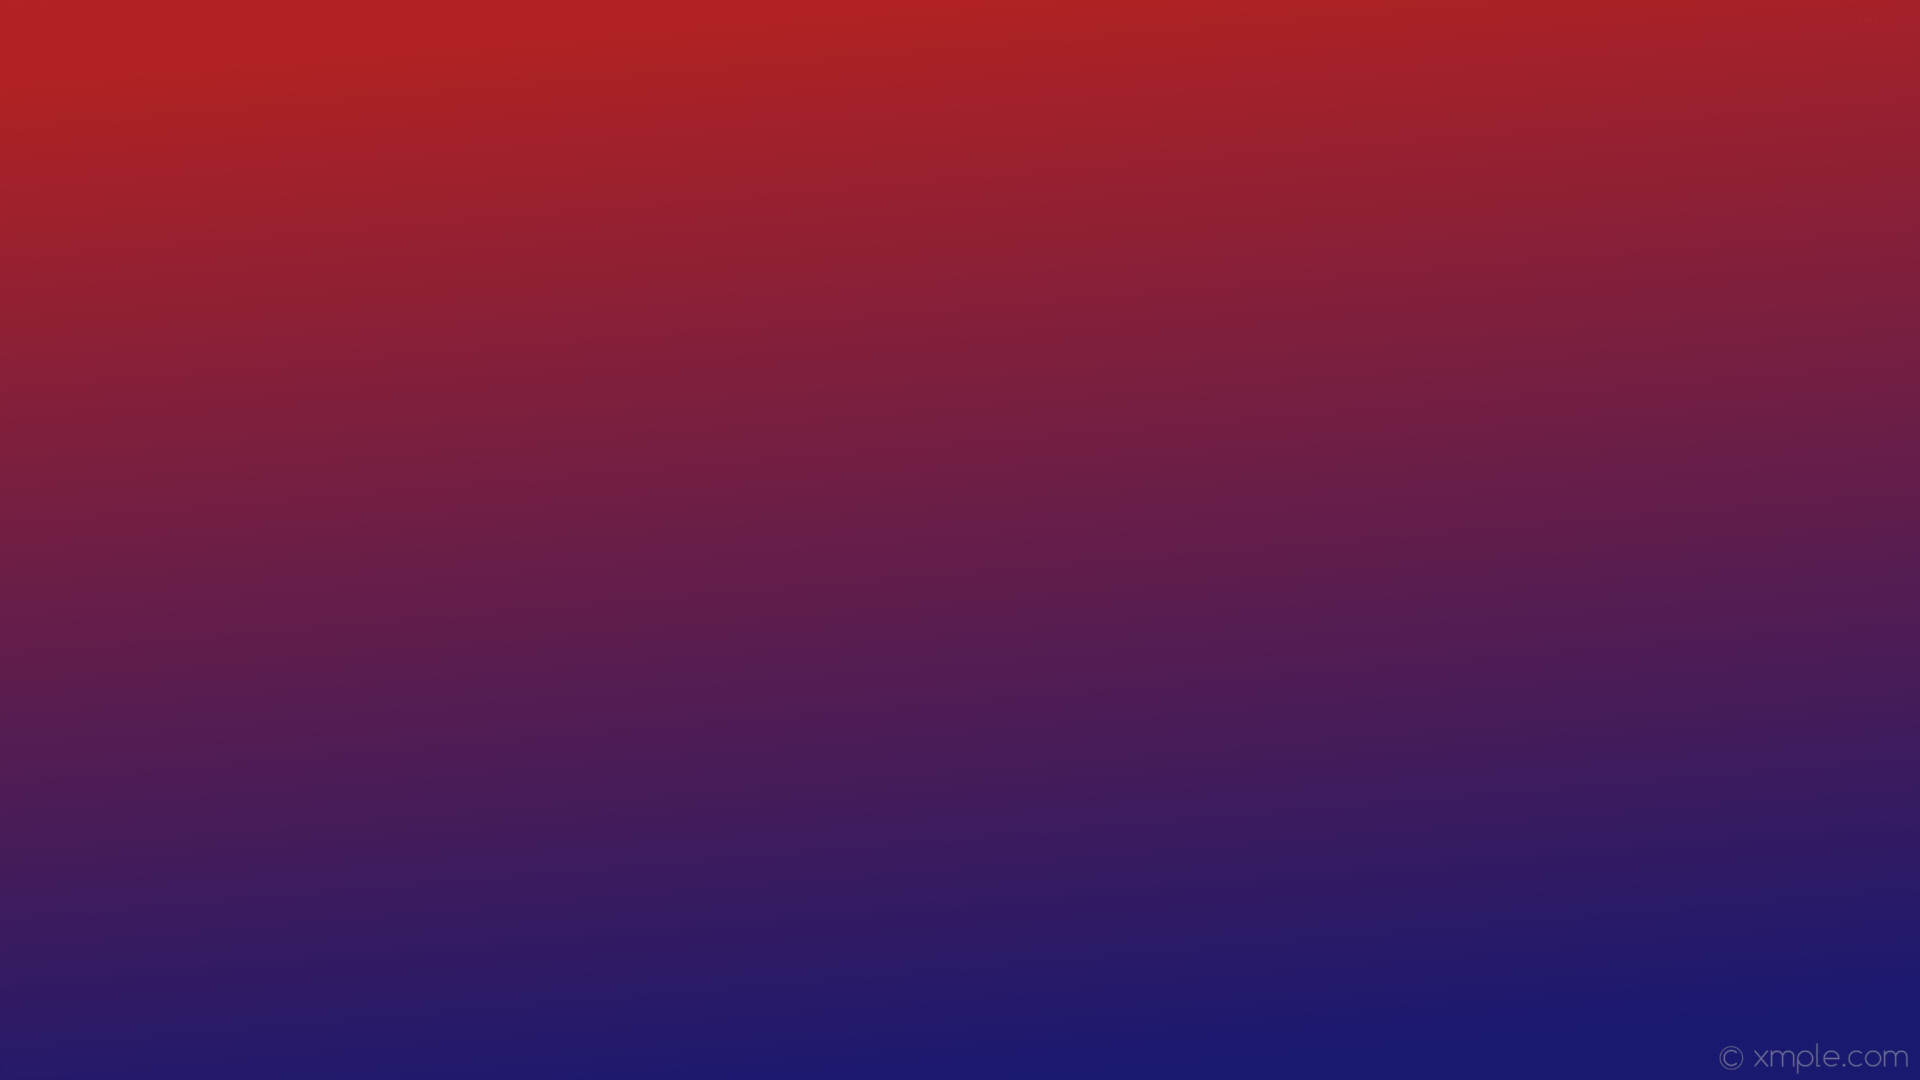 1920x1080 wallpaper gradient red blue linear midnight blue fire brick #191970 #b22222  285Â°